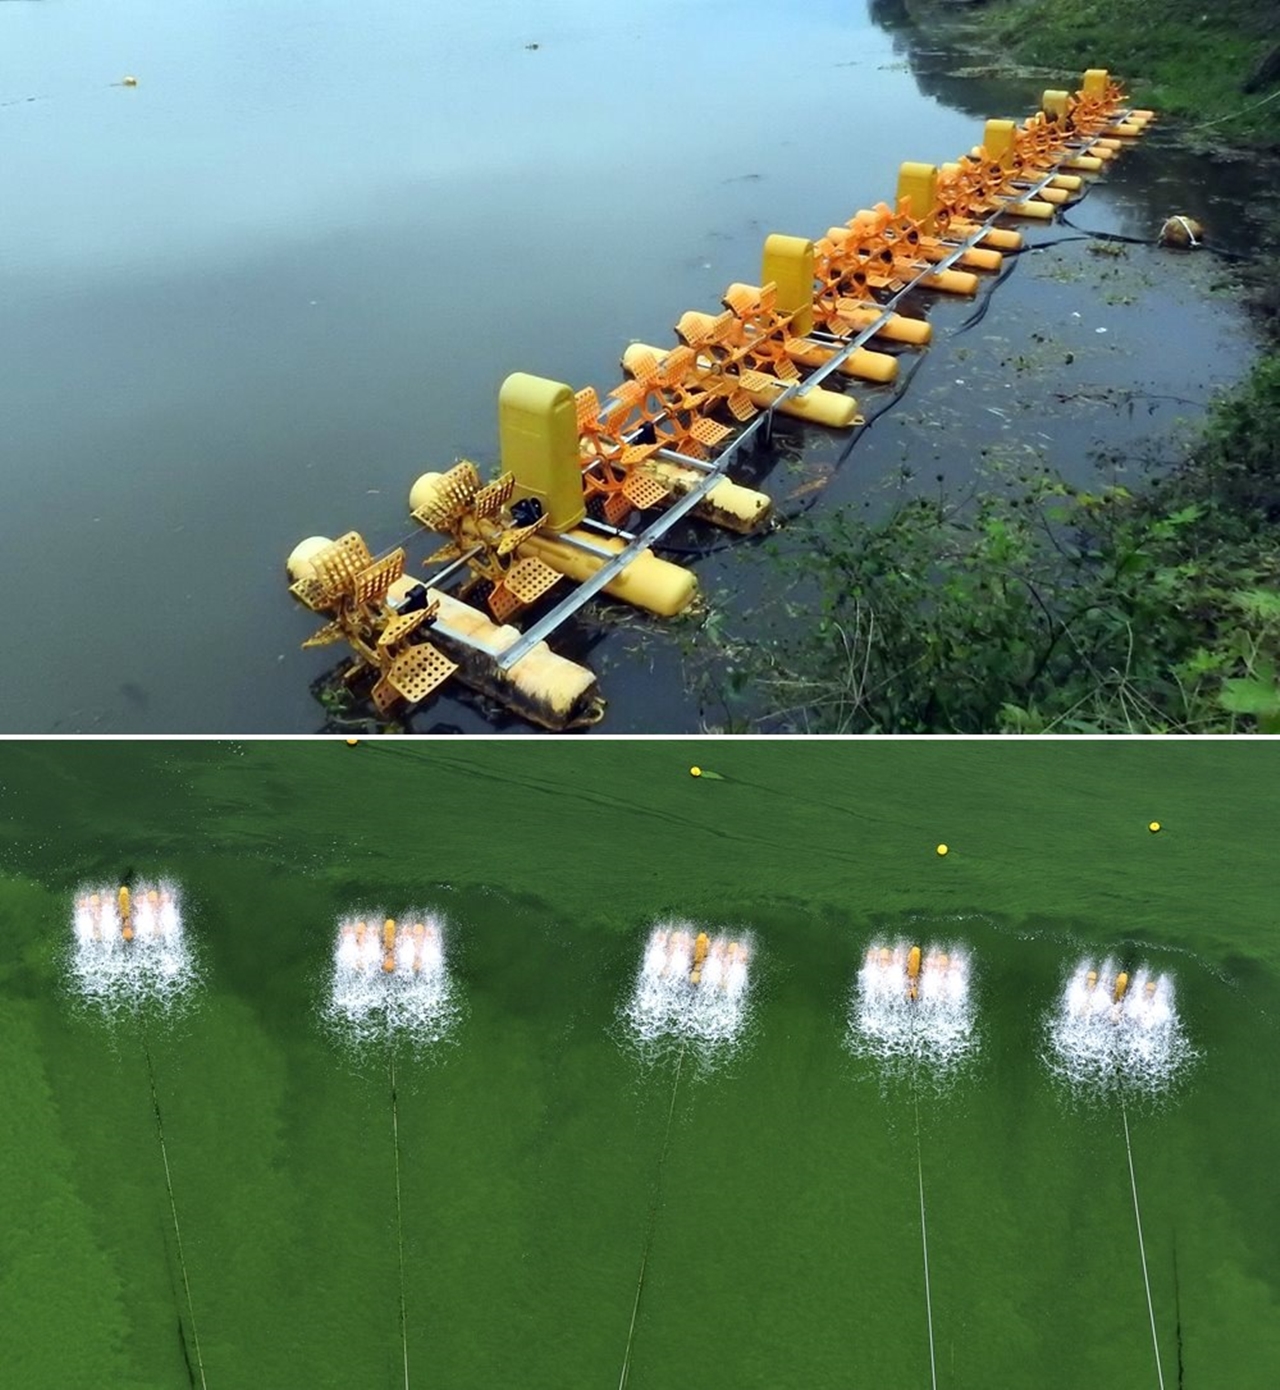 녹조라떼를 줄이기 위해 4대강에 수차가 설치되어 있다.(사진 위) 수차를 열심히 돌리고 있지만 녹조라떼는 변함없다.